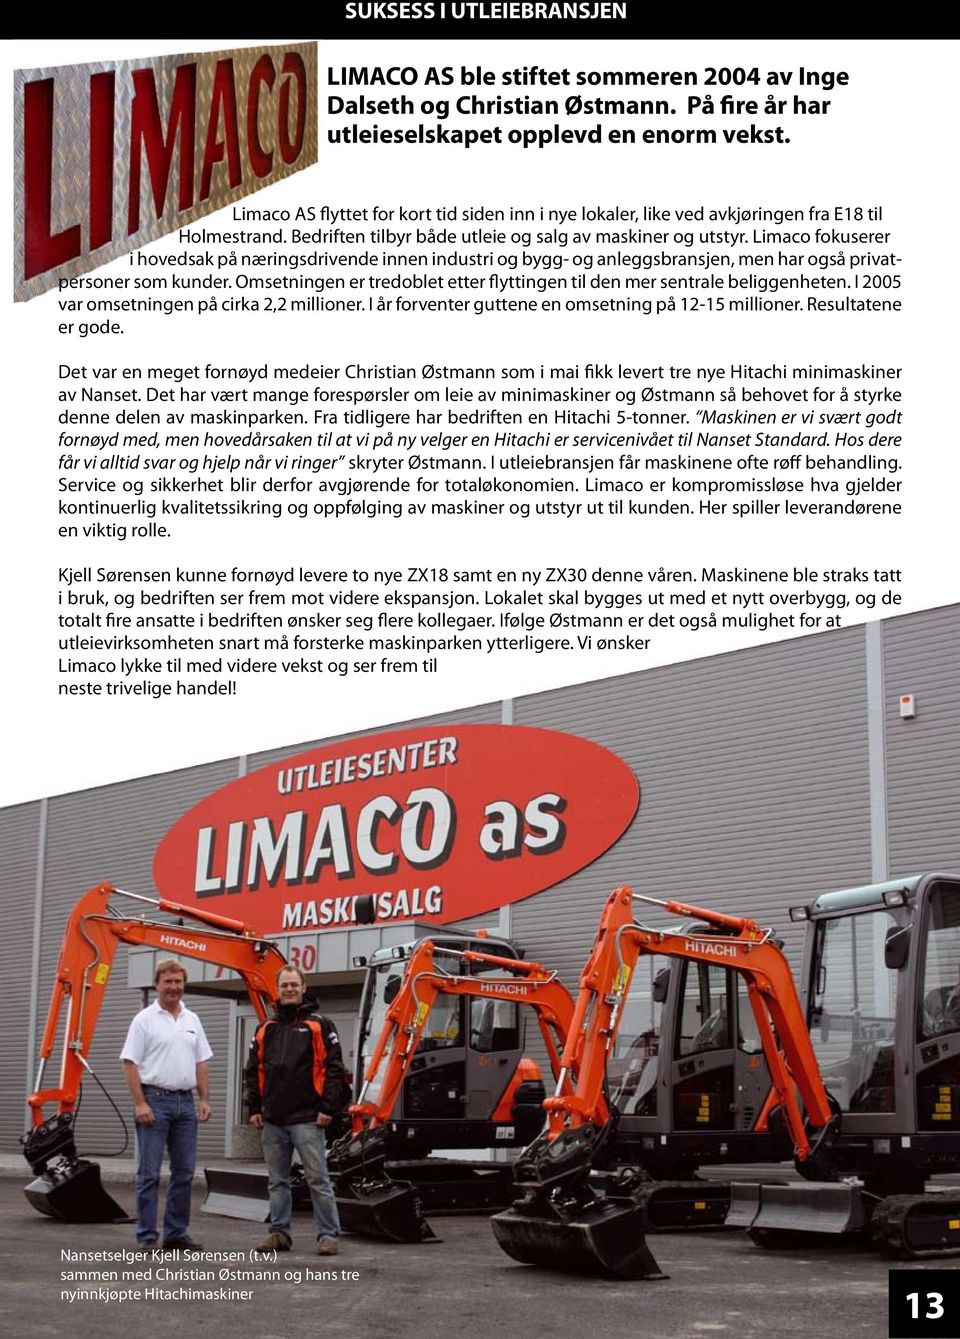 Limaco fokuserer i hovedsak på næringsdrivende innen industri og bygg- og anleggsbransjen, men har også privatpersoner som kunder.